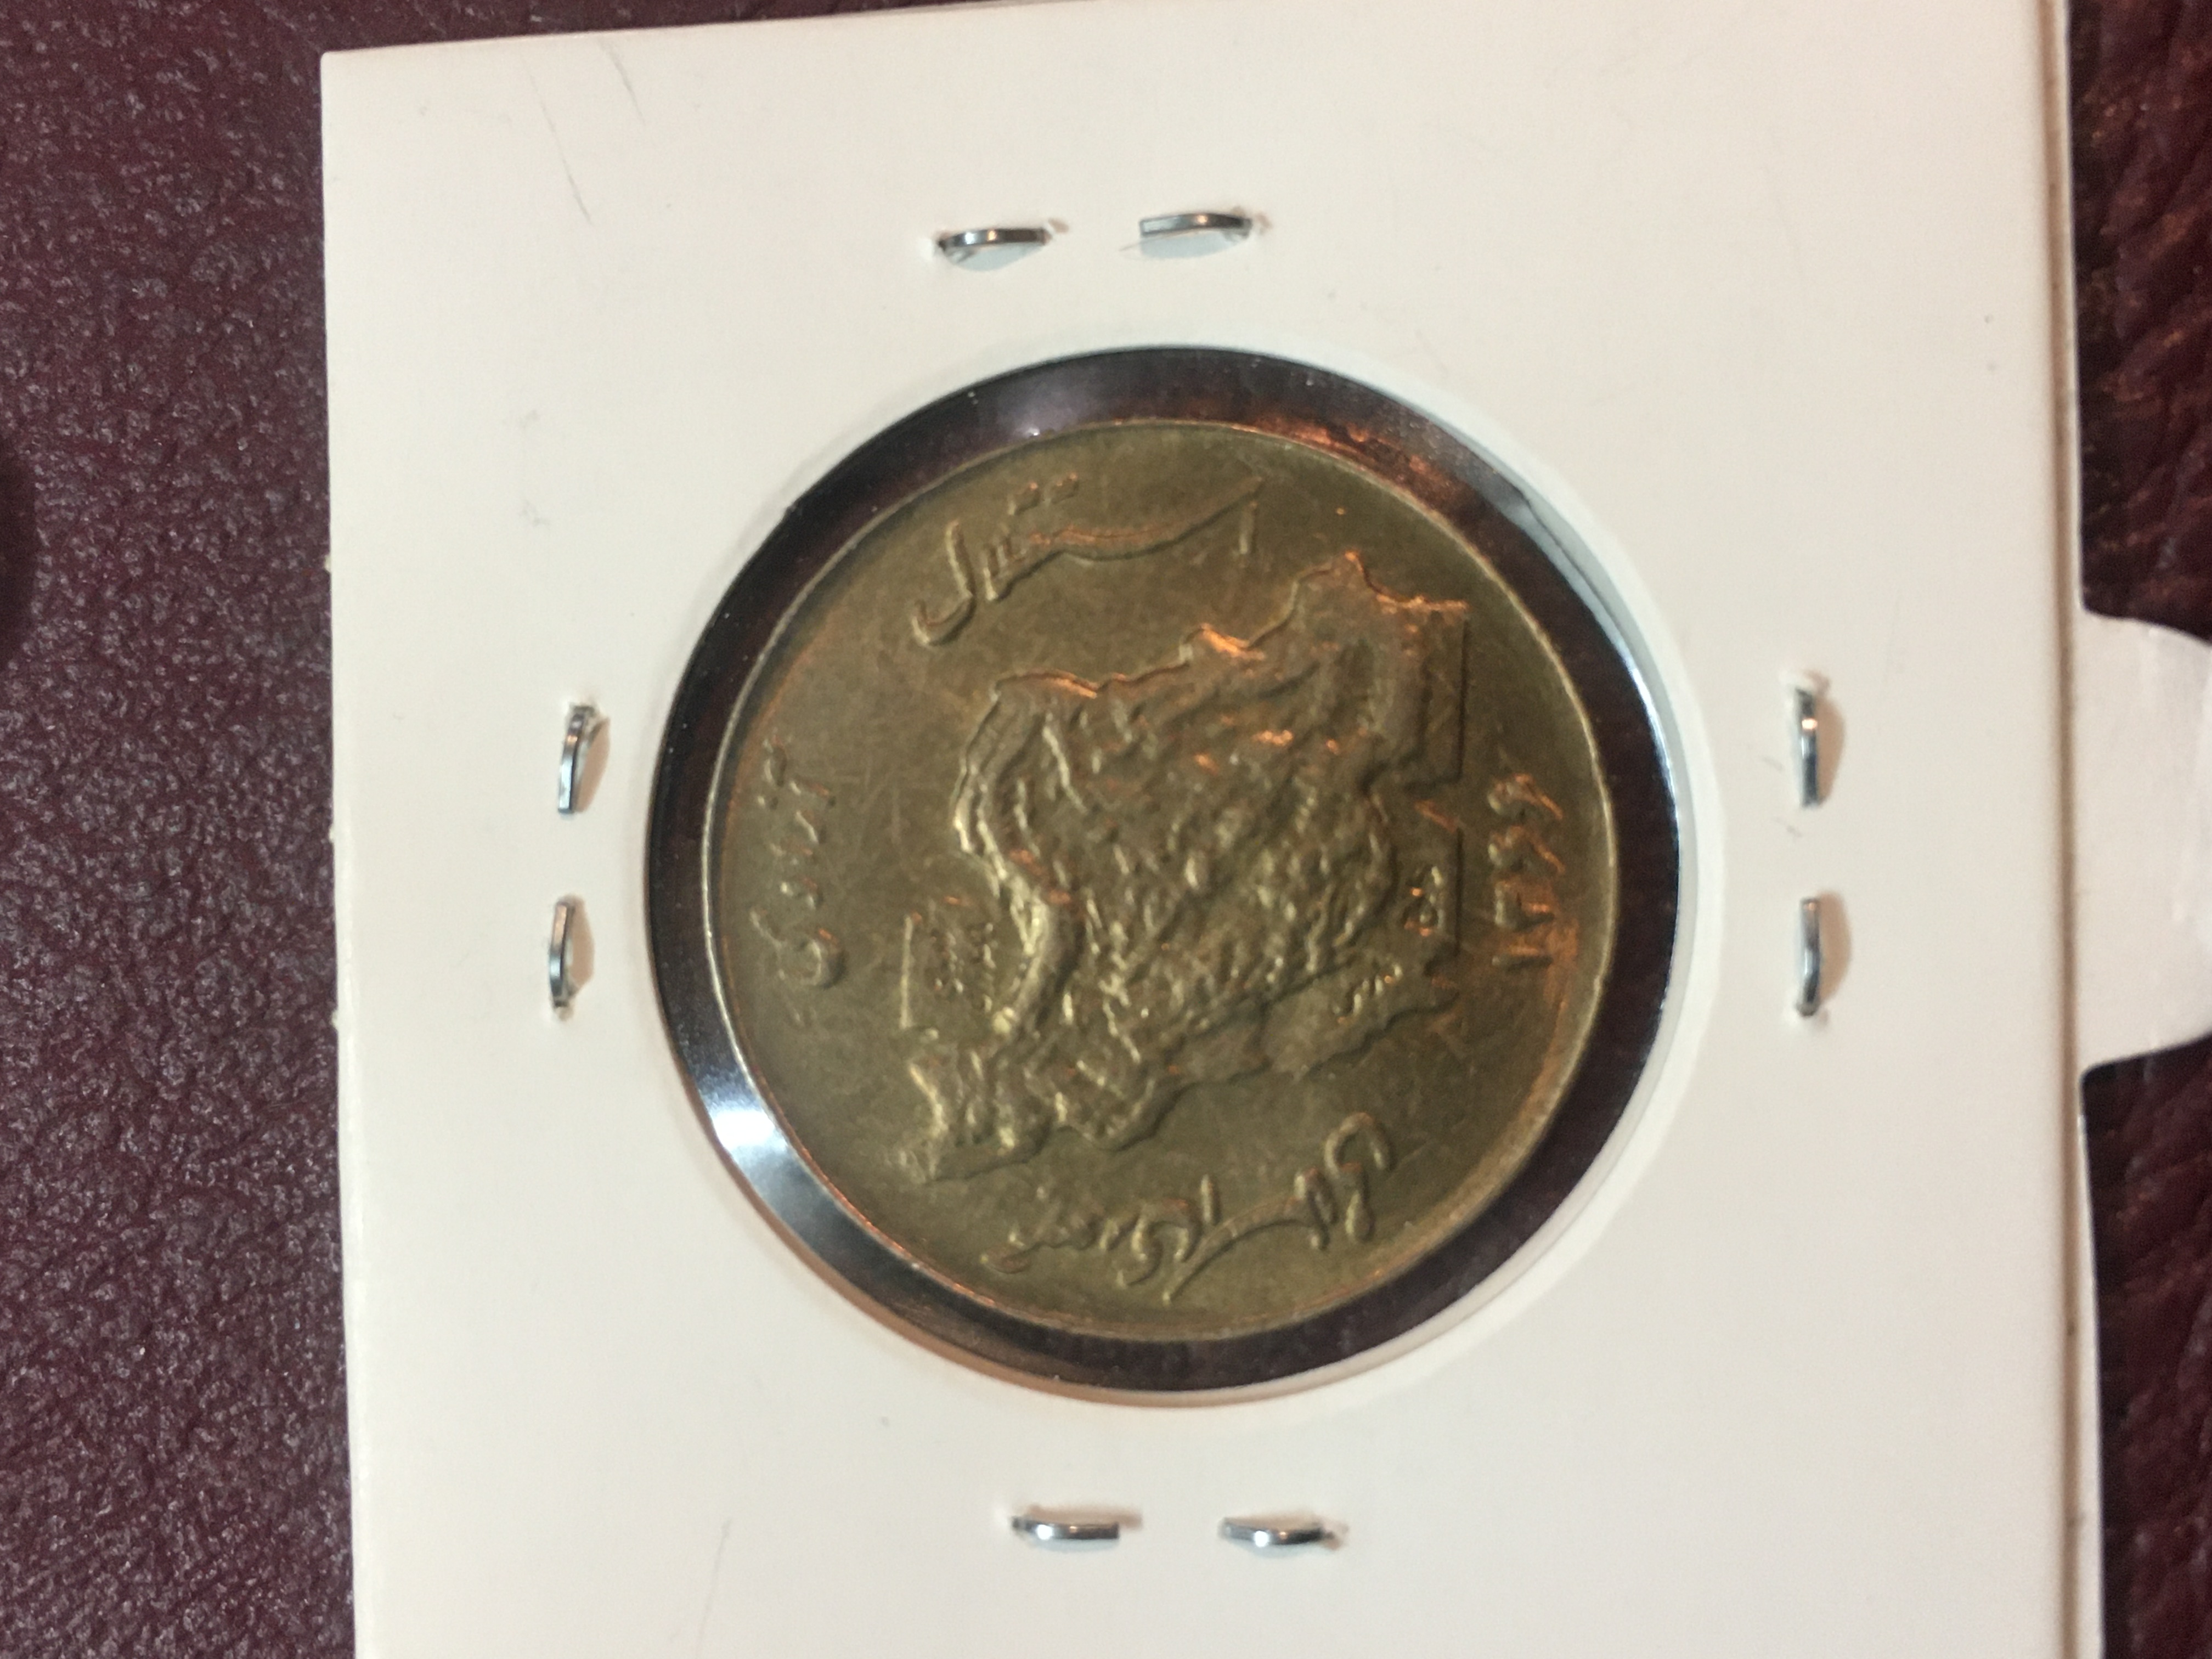 سکه ۵٠ ریال مسی بانکی کاور شده ( سوپر نیست) با قیمت حراجی